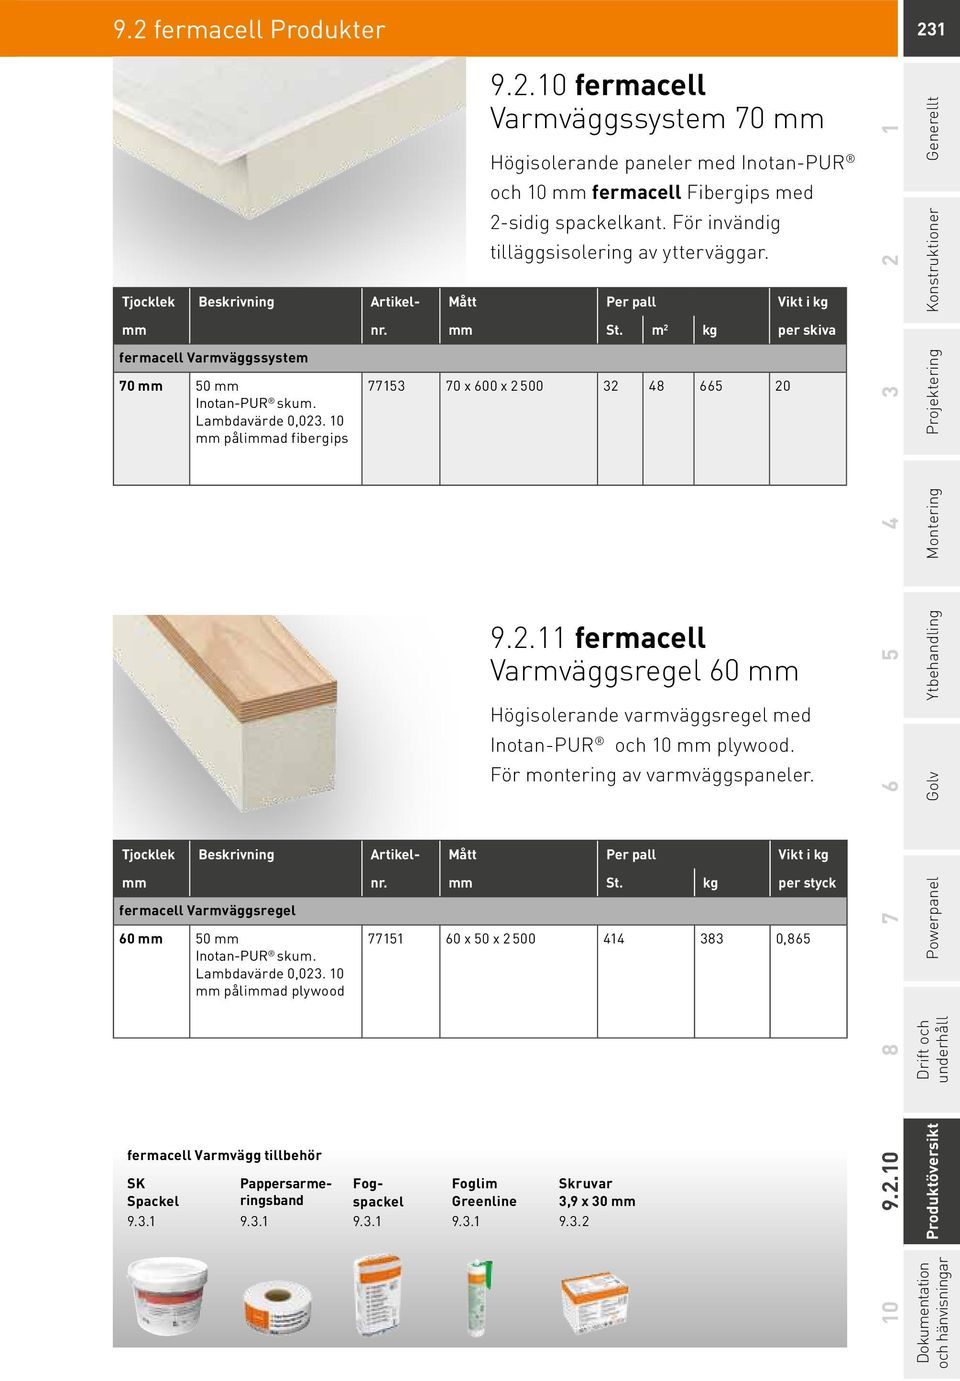 Lambdavärde 0,023. 10 mm pålimmad fibergips 77153 70 x 600 x 2 500 32 48 665 20 9.2.11 fermacell Varmväggsregel 60 mm Högisolerande varmväggsregel med Inotan-PUR och 10 mm plywood.